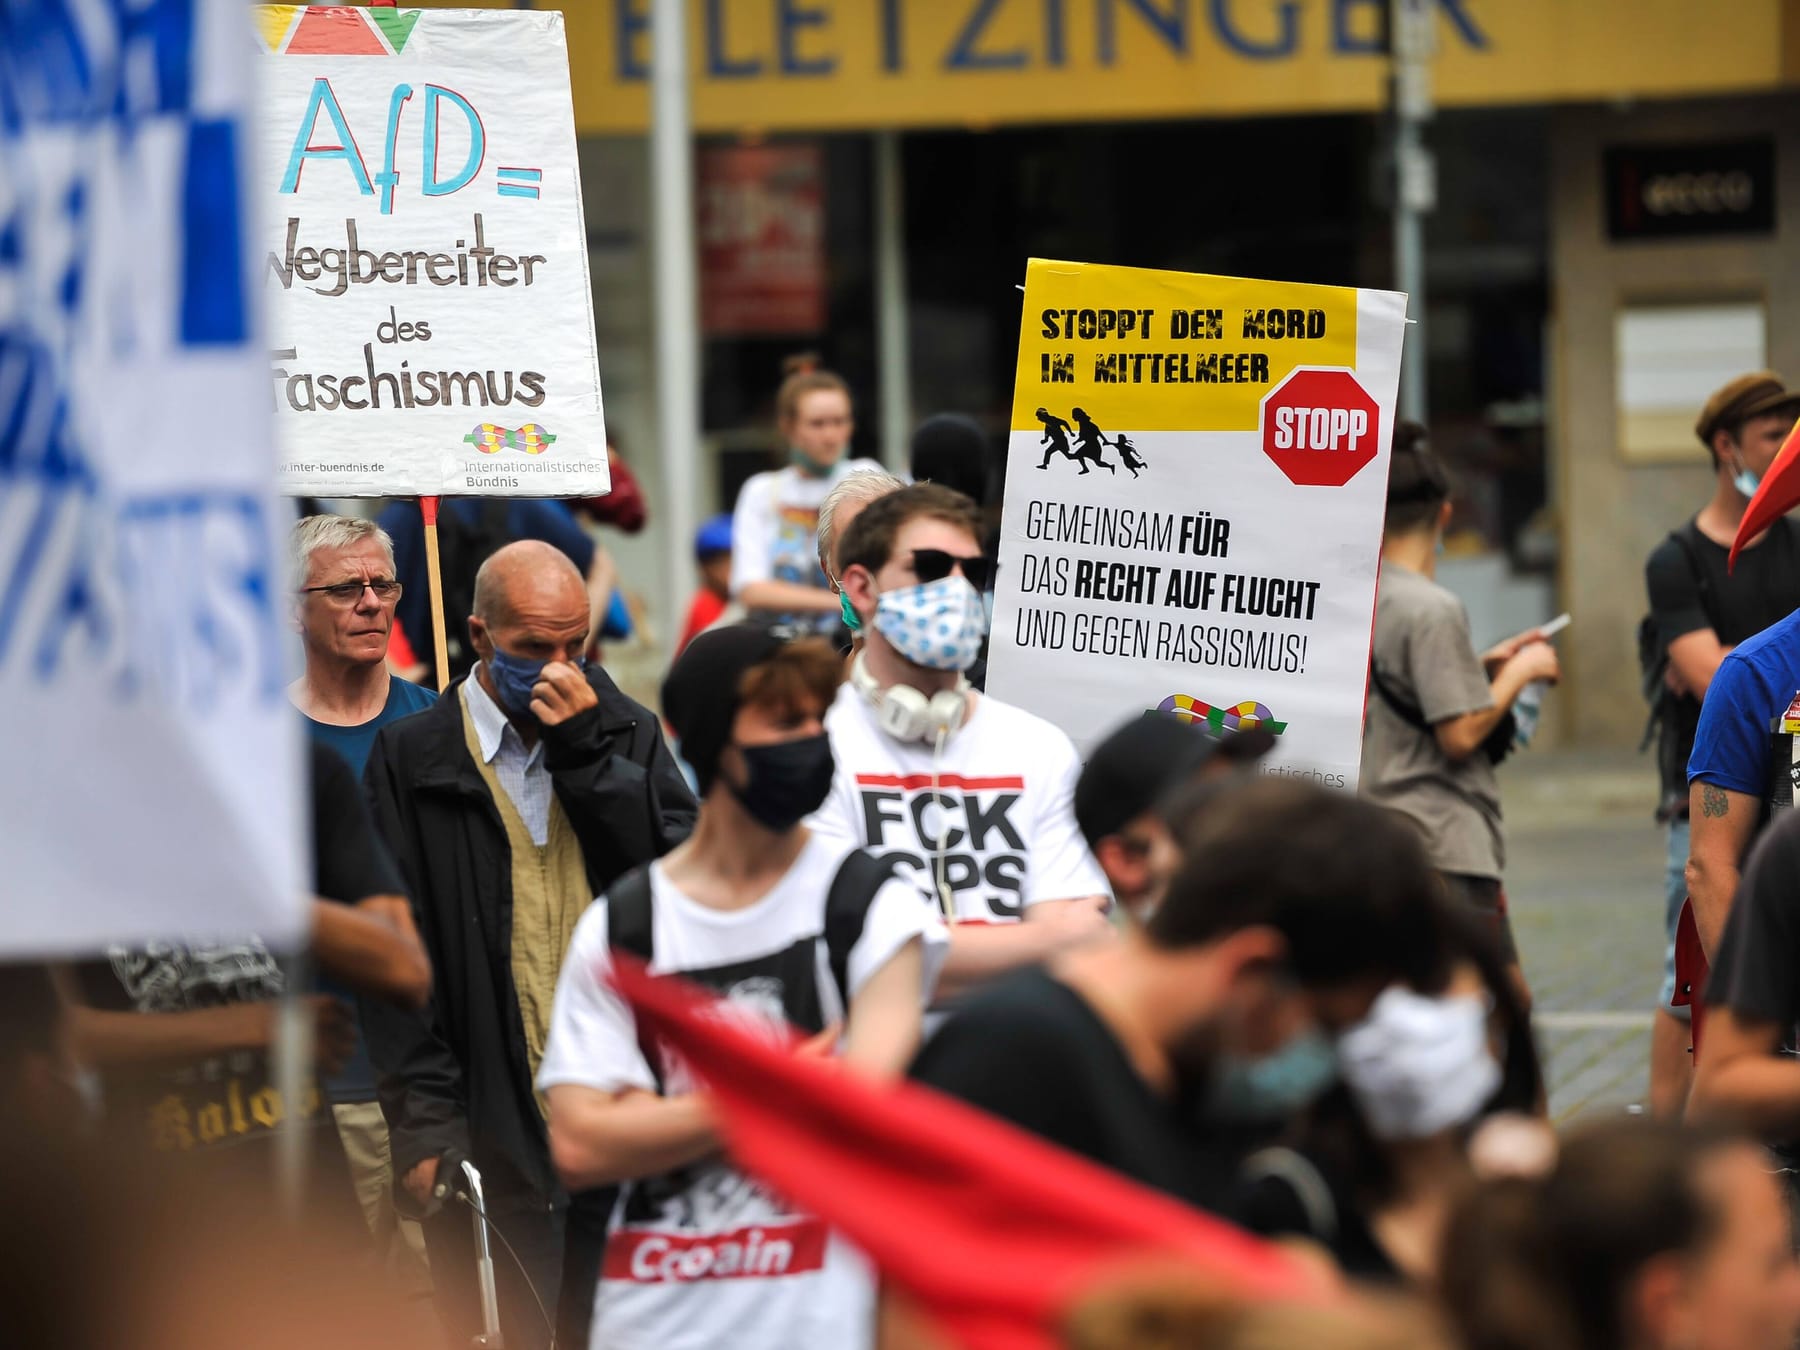 Stuttgart, Ulm und Heidelberg: Demos gegen Rechts und die AfD geplant